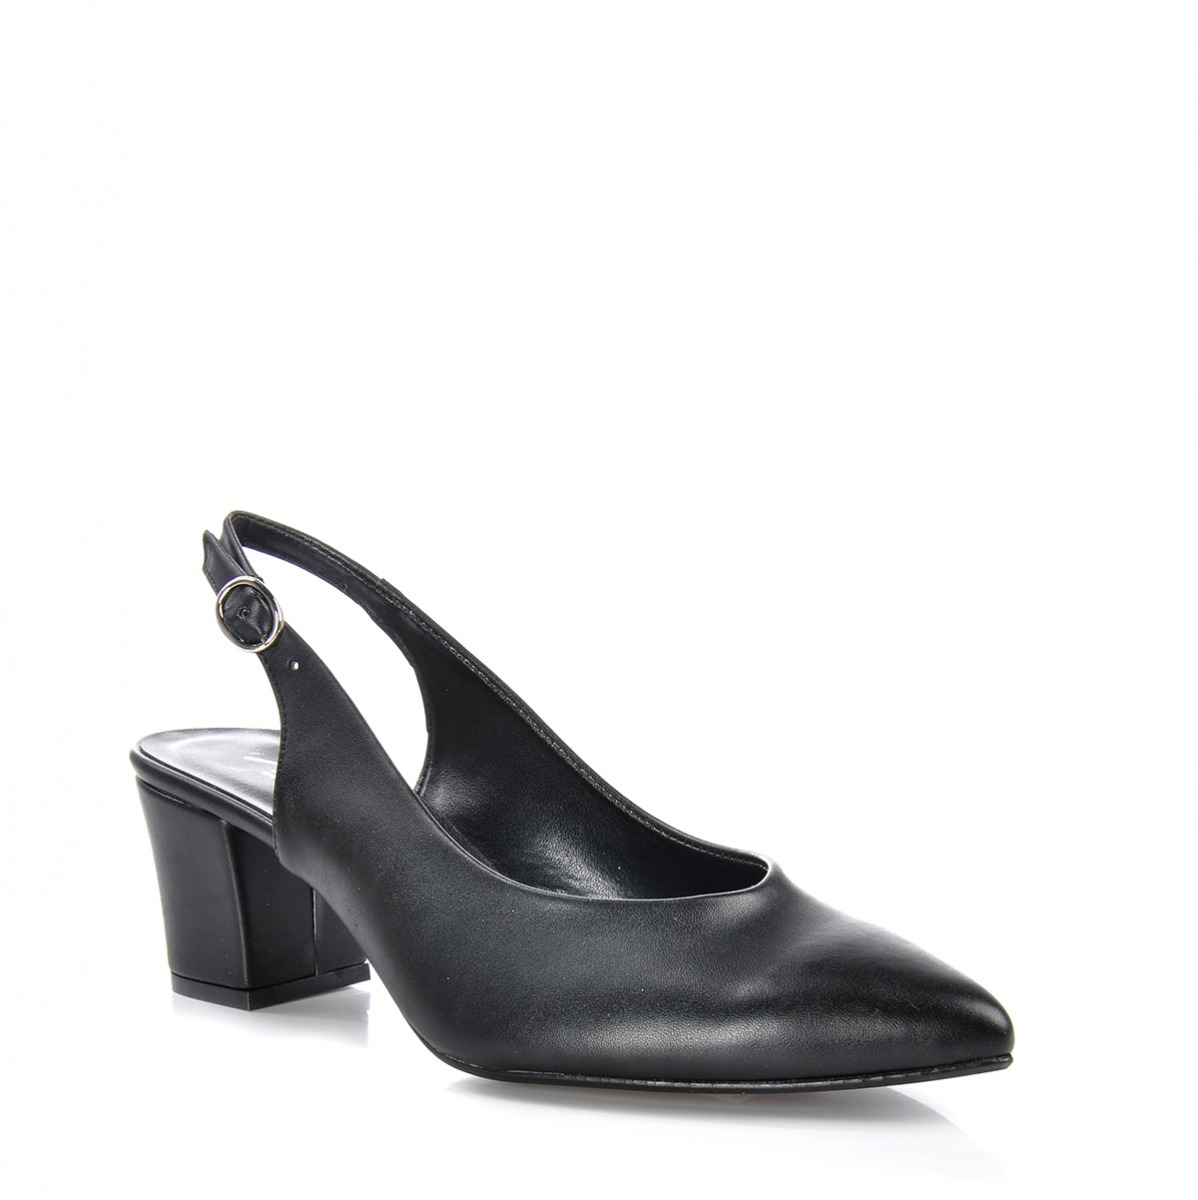 Flo Kadın  Siyah Klasik Topuklu Ayakkabı VZN-233Y. 2